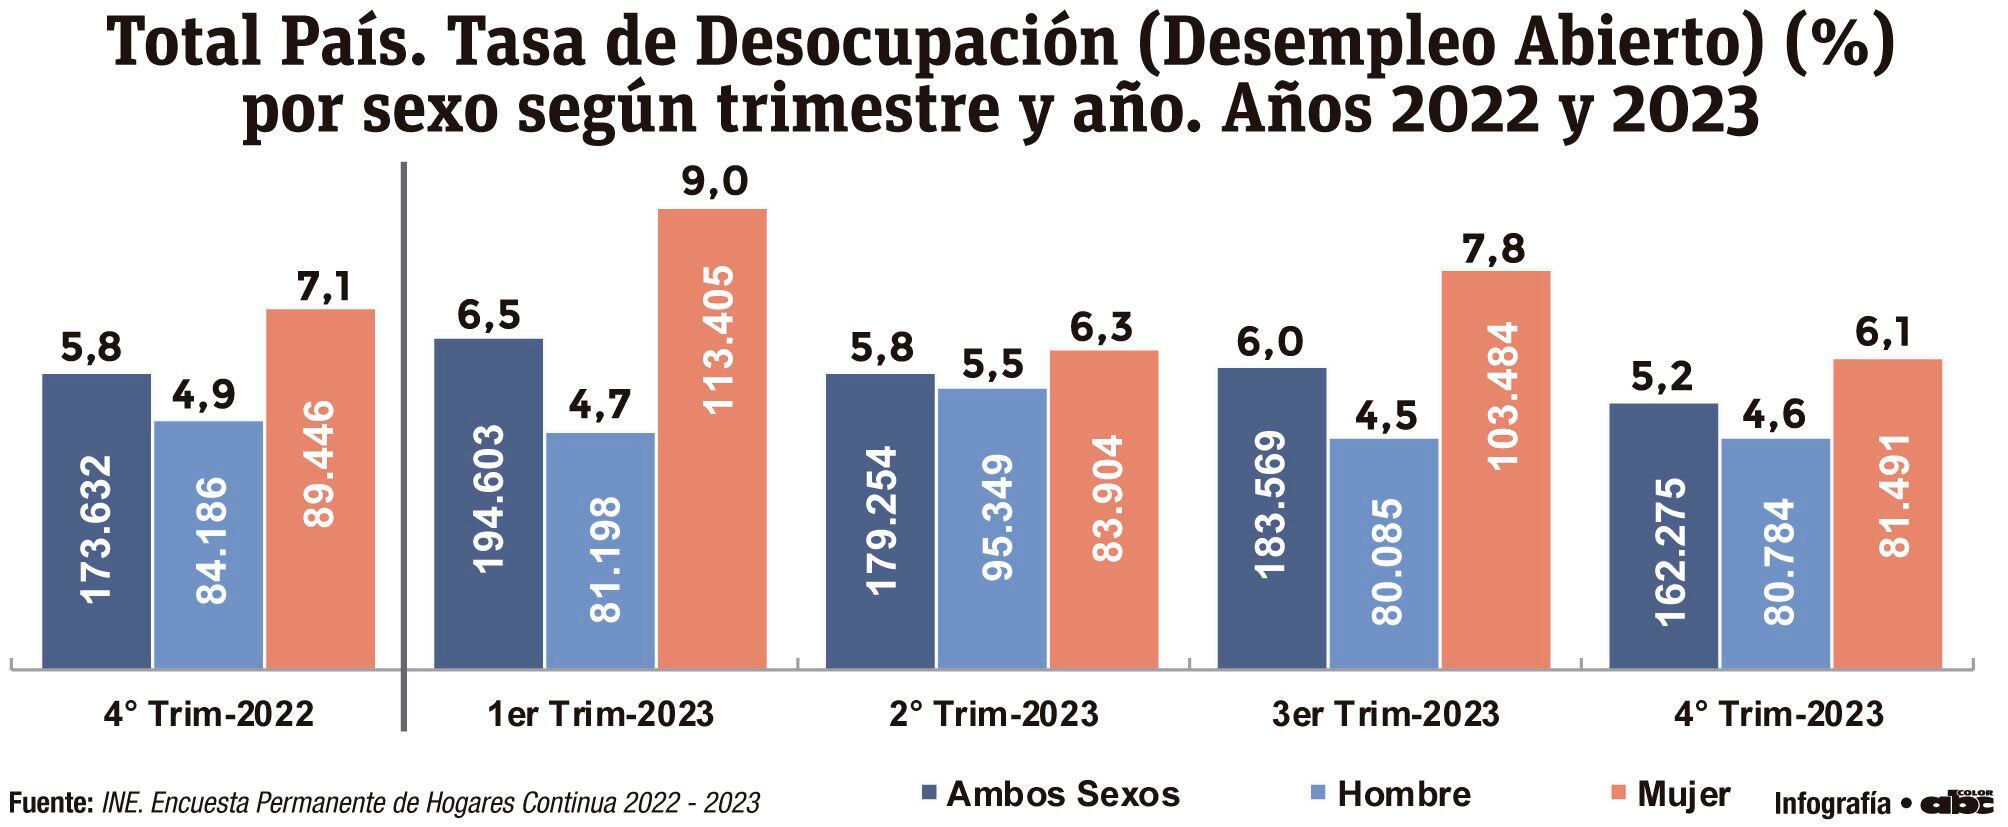 Total País. Tasa de Desocupación (Desempleo Abierto) (%) por sexo según trimestre y año. Años 2022 y 2023